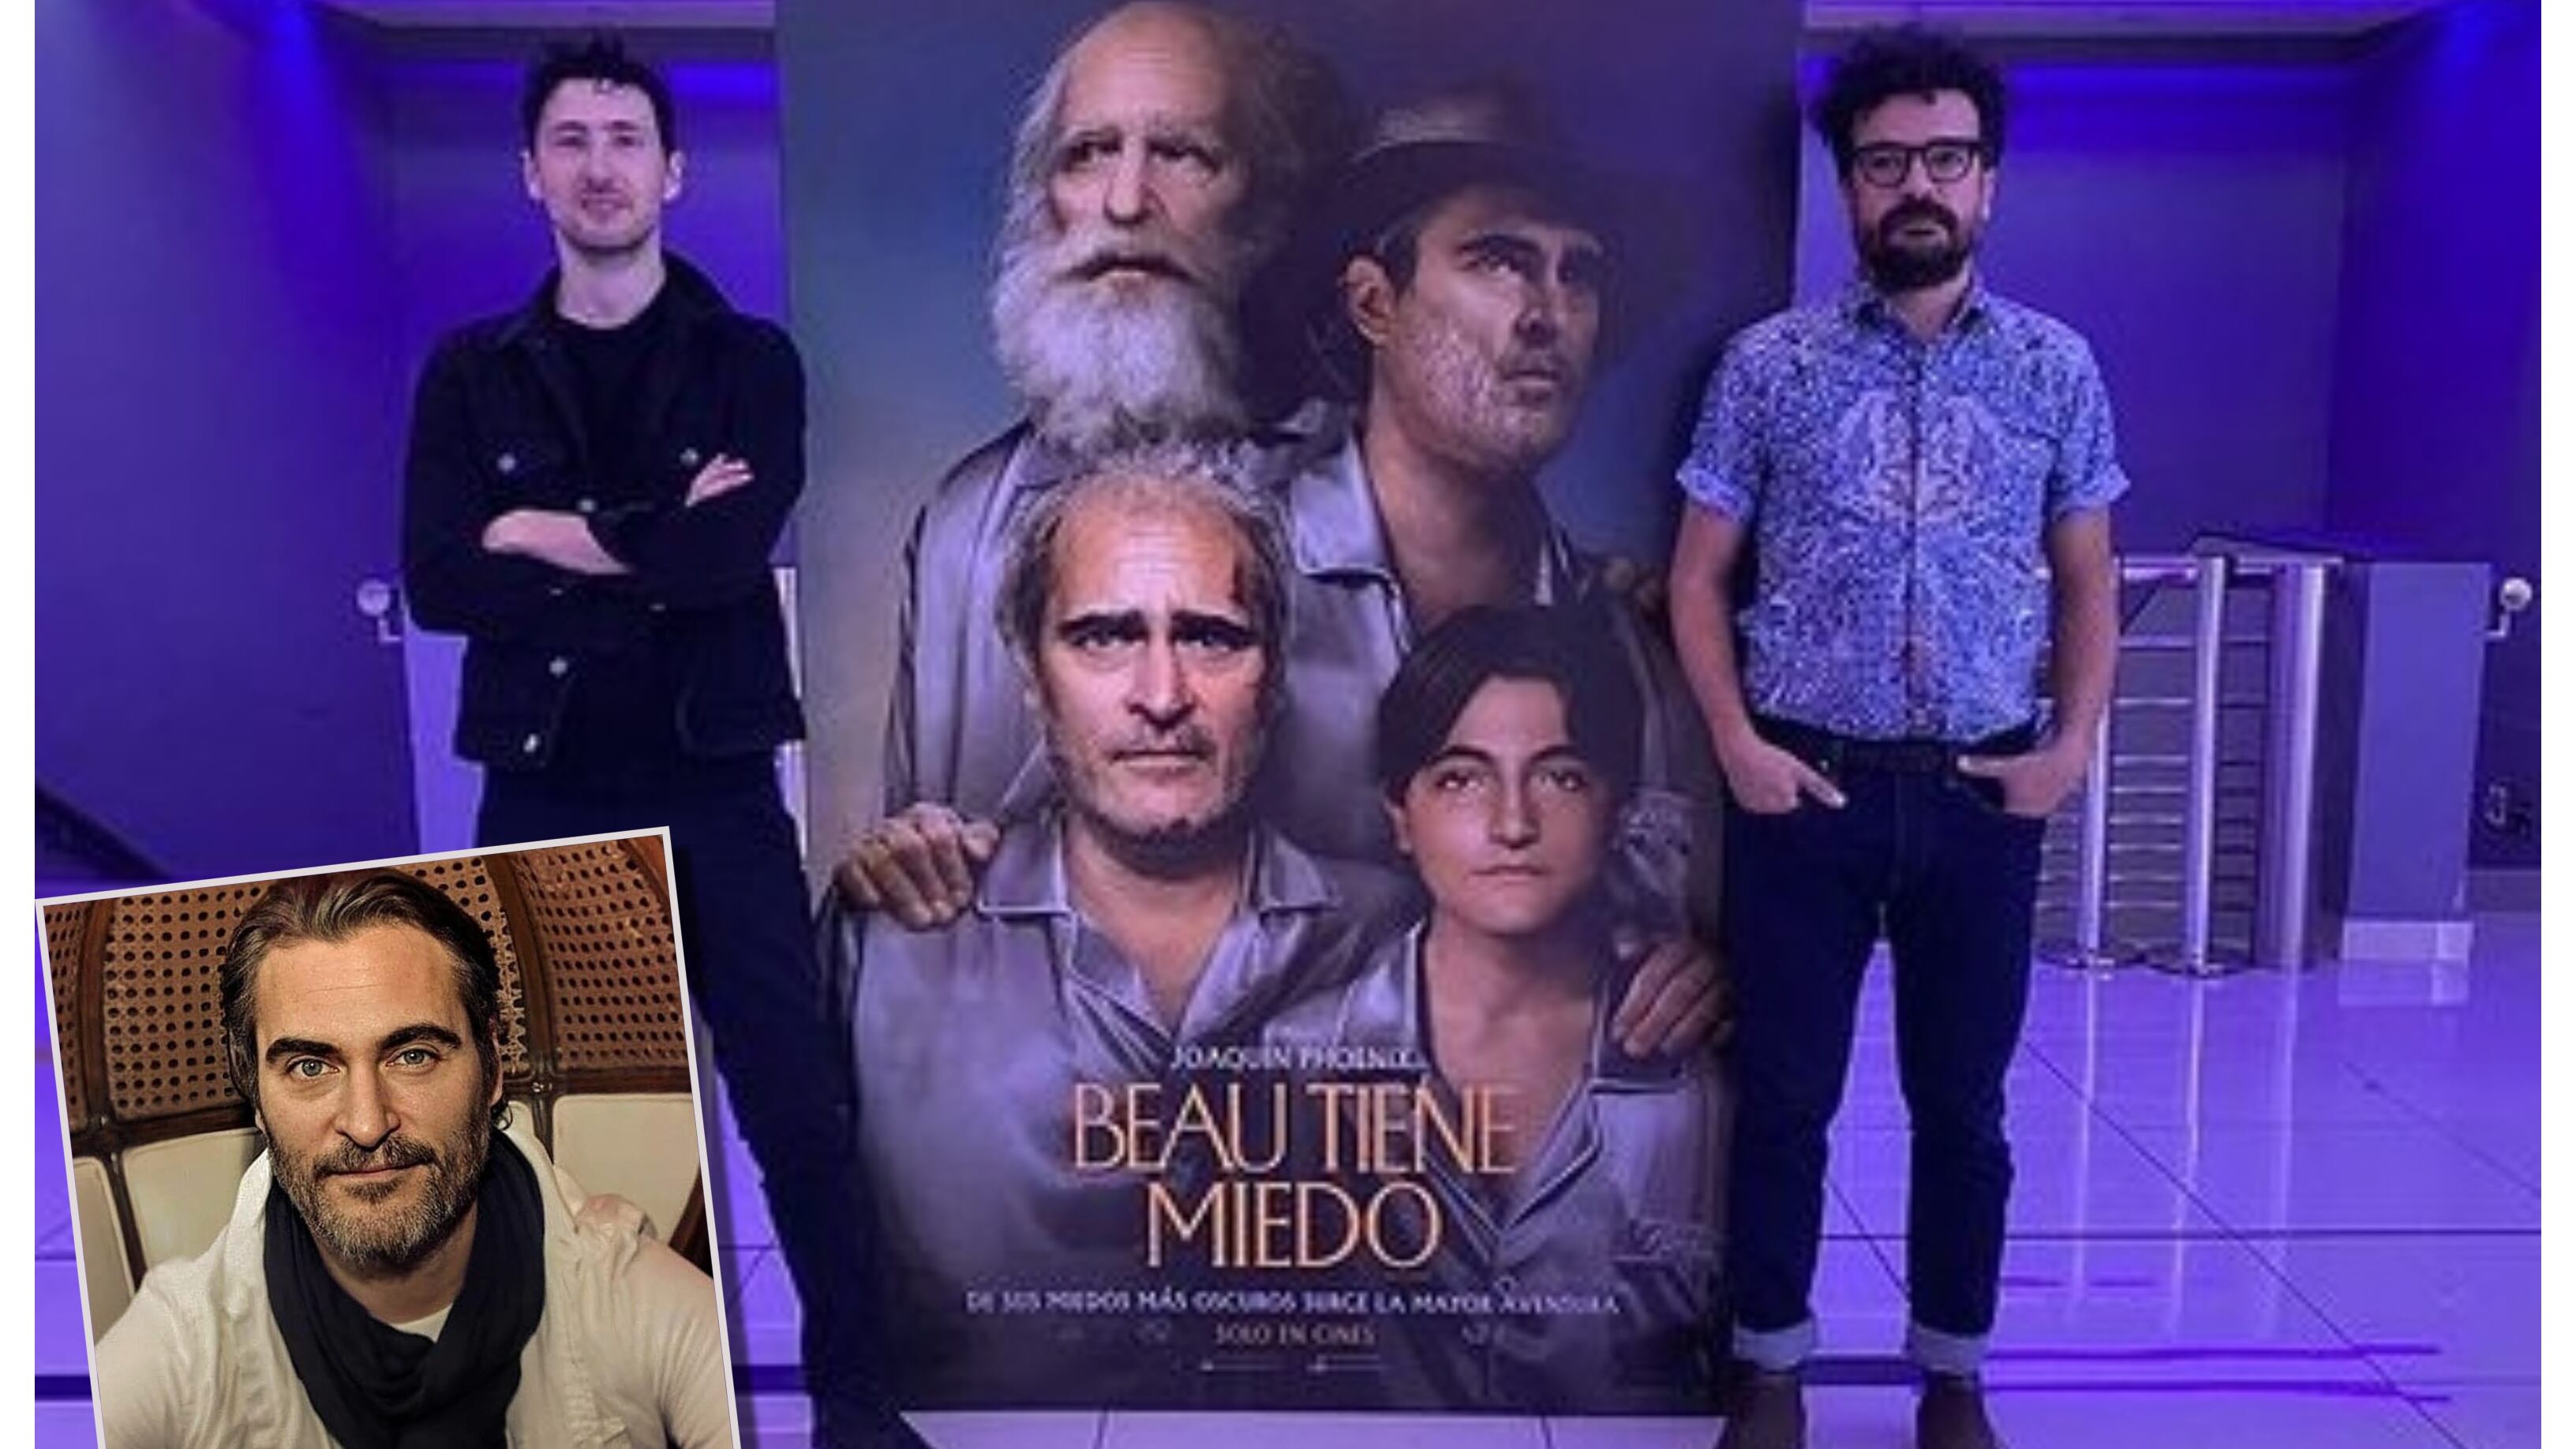 Los directores nacionales son parte del nuevo filme protagonizado por el actor Joaquin Phoenix, "Beau tiene miedo", que se estrenó este jueves en los cines chilenos.